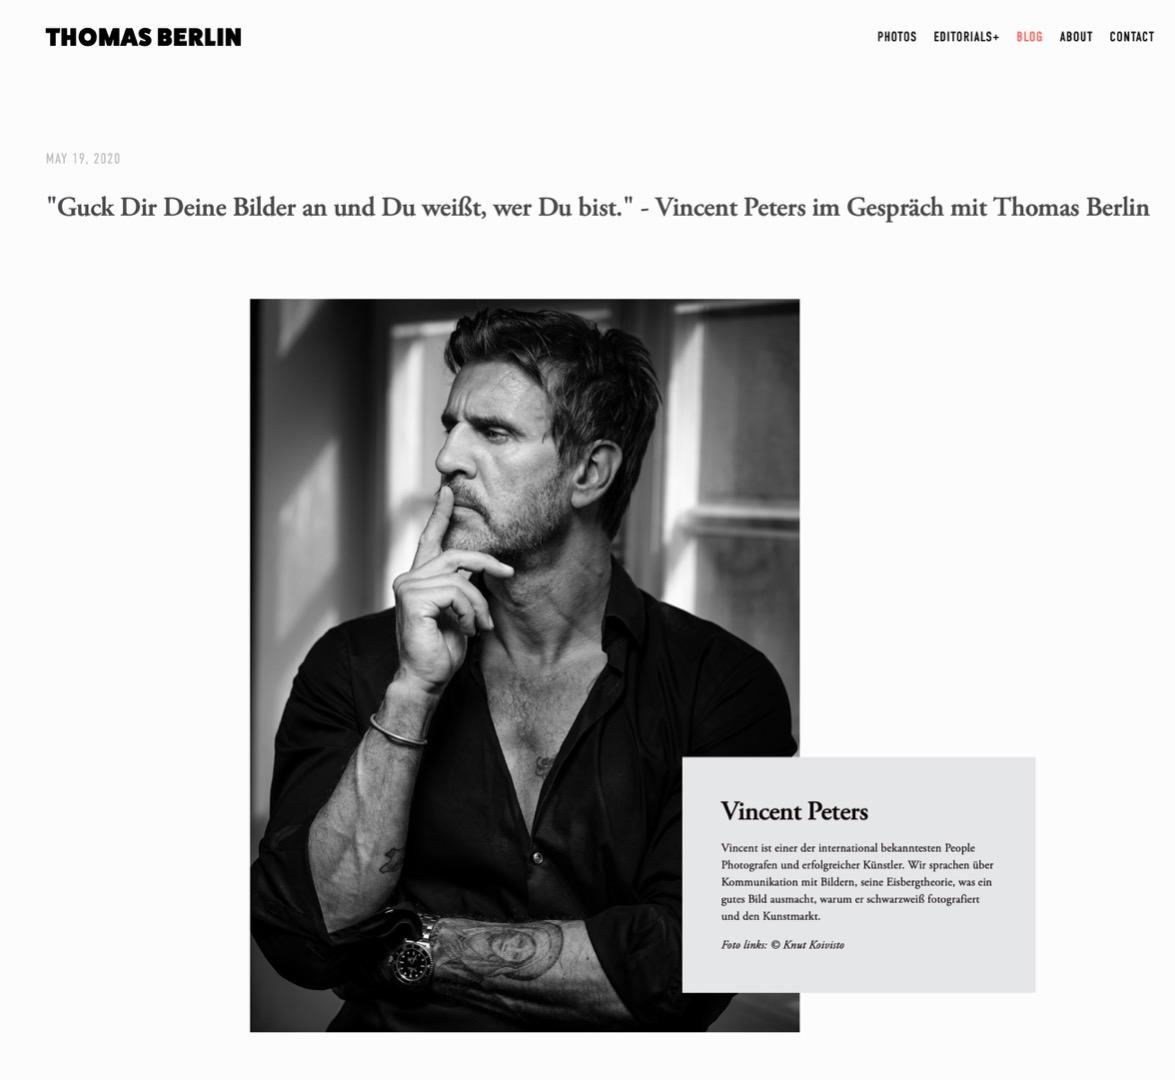 Interview mit Vincent Peters - Blog-Beitrag von Fotograf Thomas Berlin / 19.05.2020 10:10